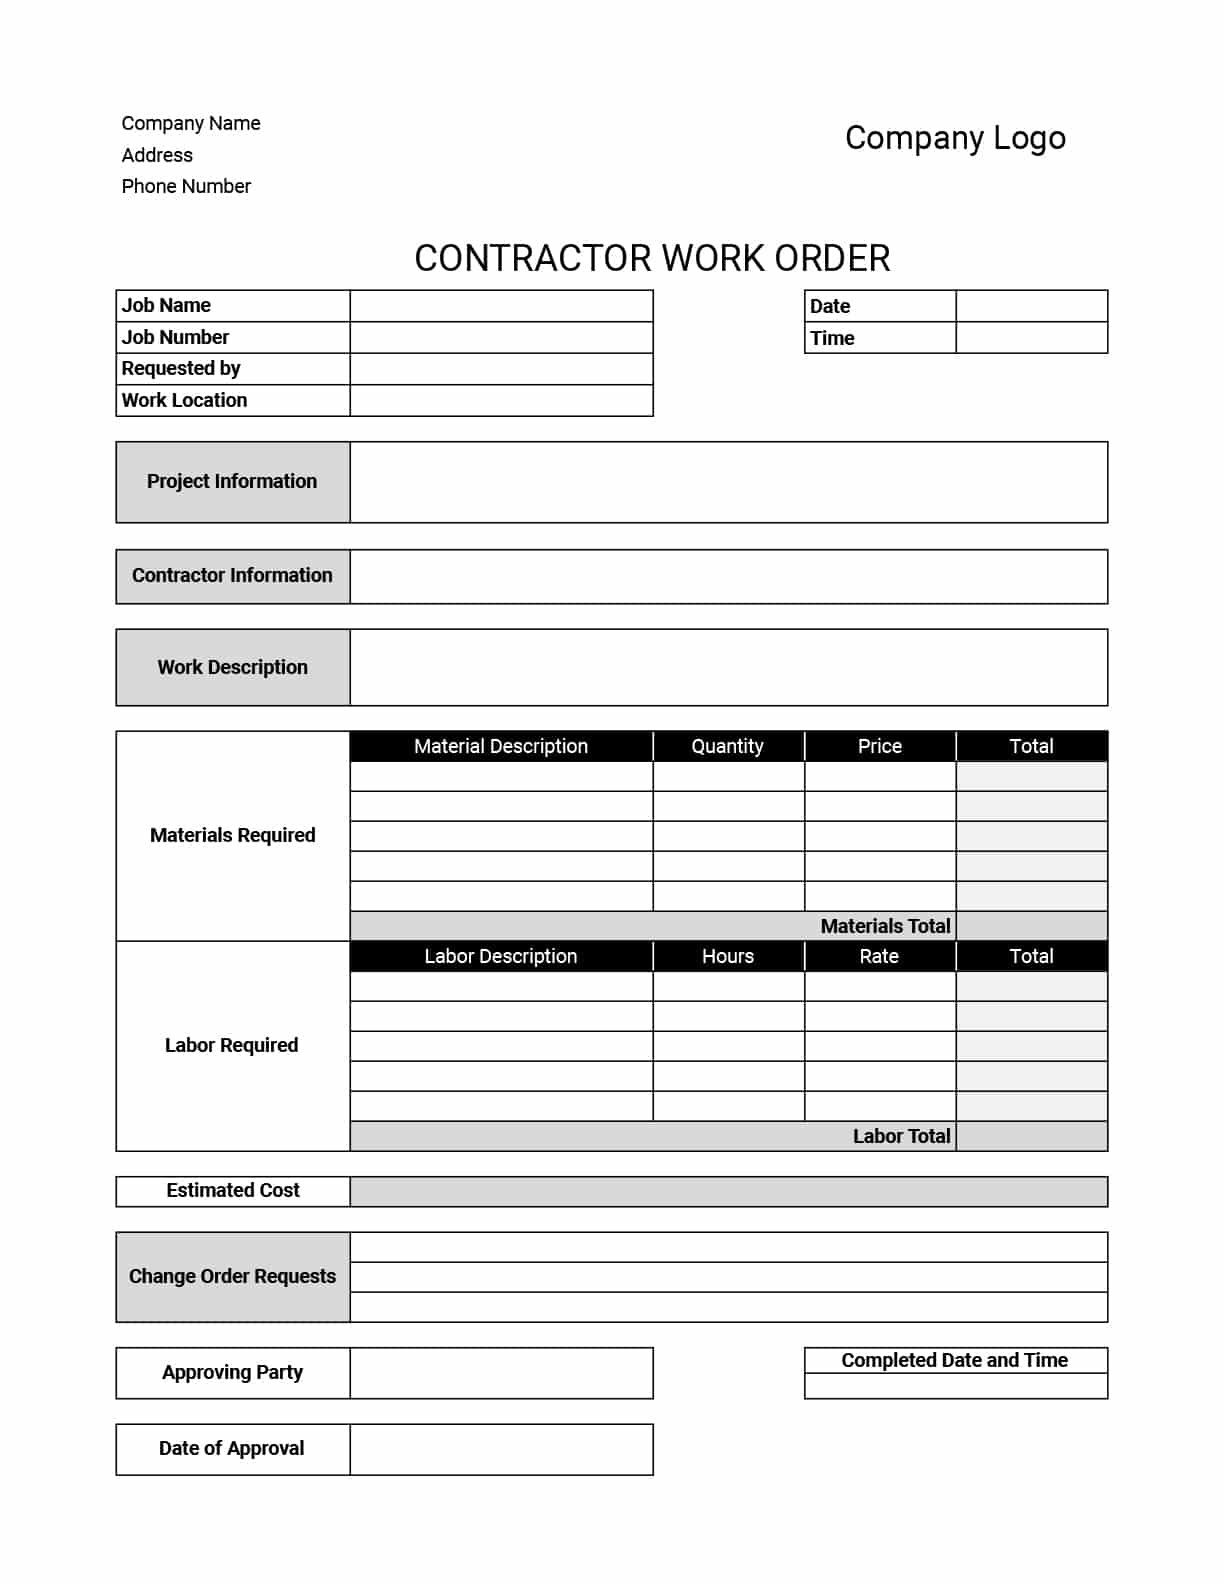 Contractor Work Order Template